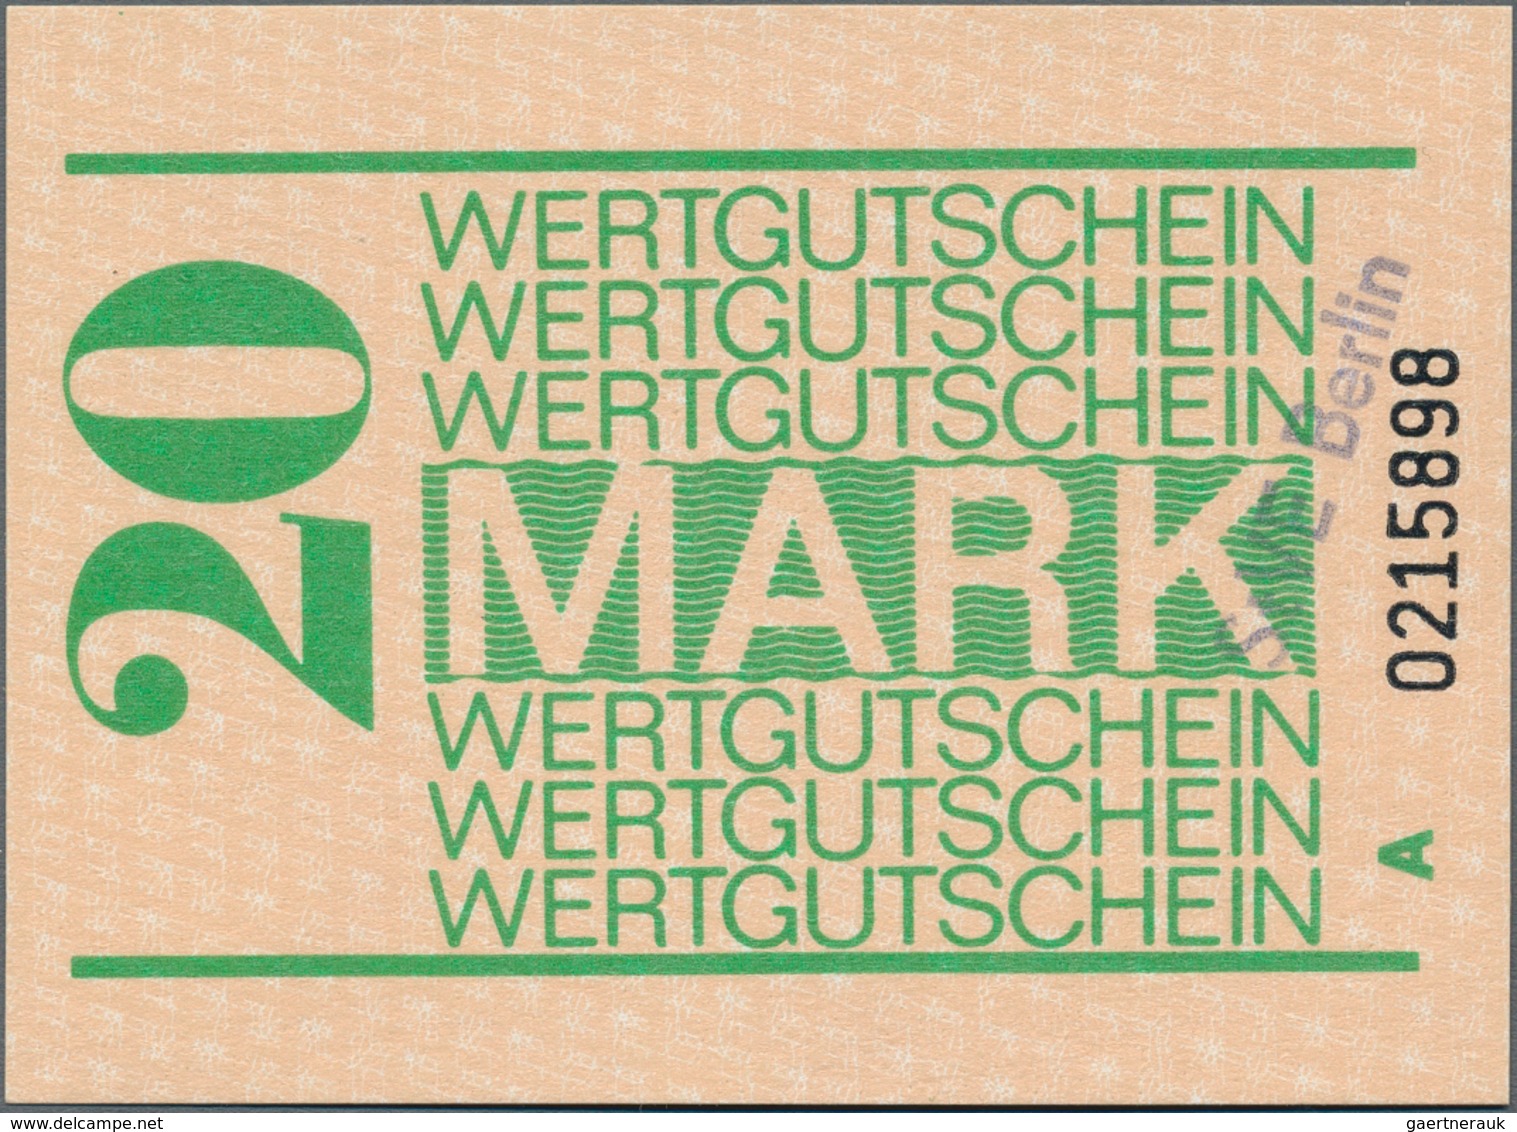 Deutschland - DDR: Album mit 181 Banknoten und diversen Gutscheinen DDR, diversen Banknoten Deutsche